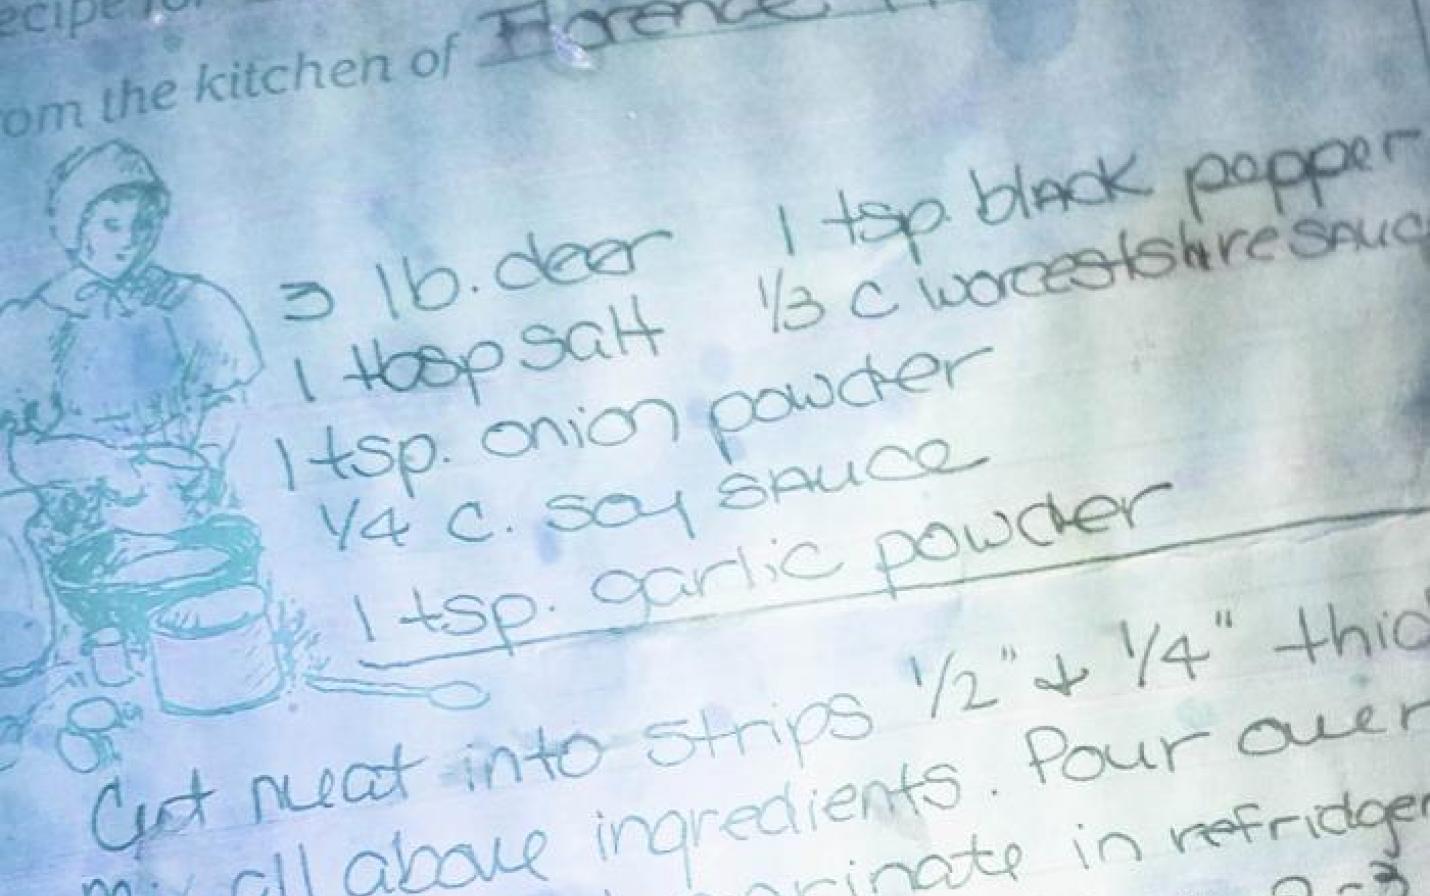 photo of hand-written recipe